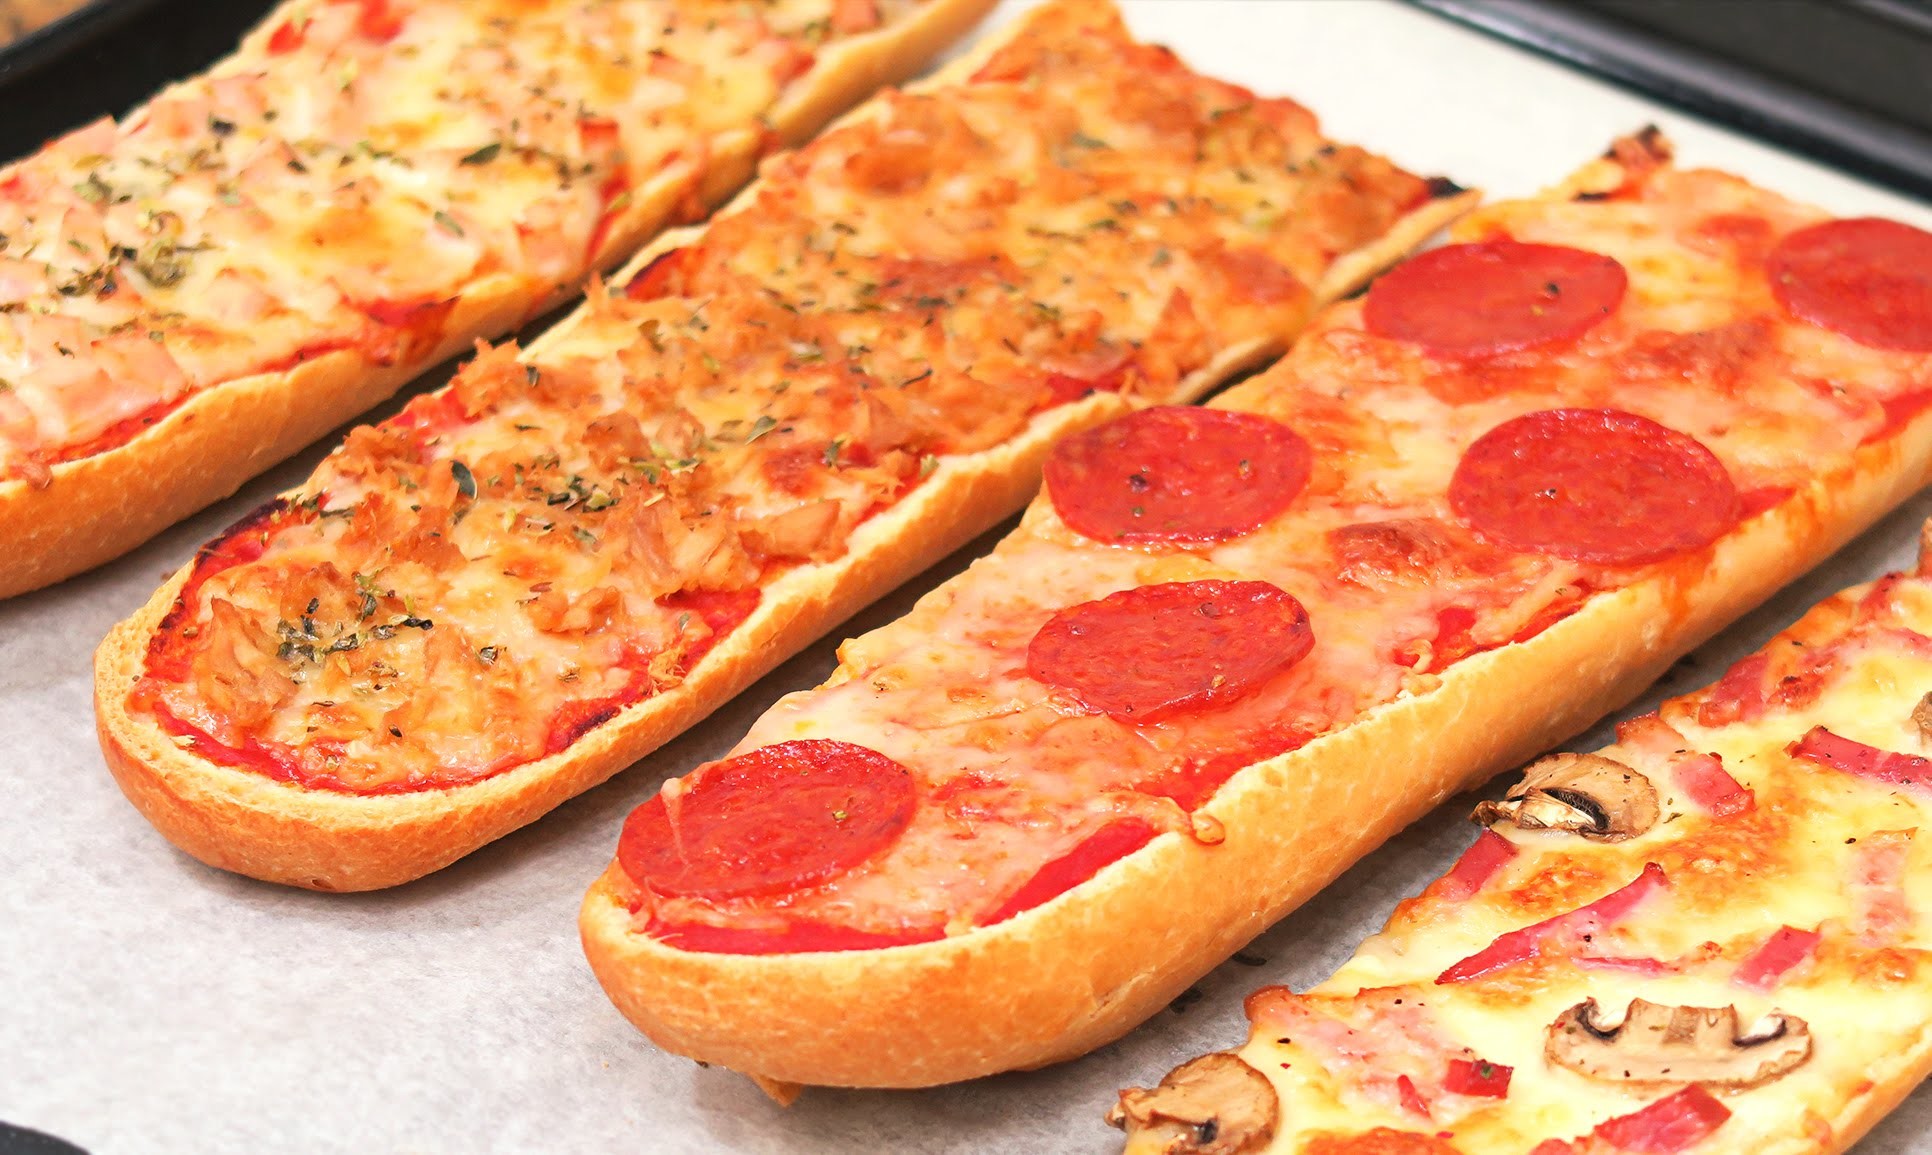 4 Tipos de Pizza Fáciles y Rápidas de hacer con Pan